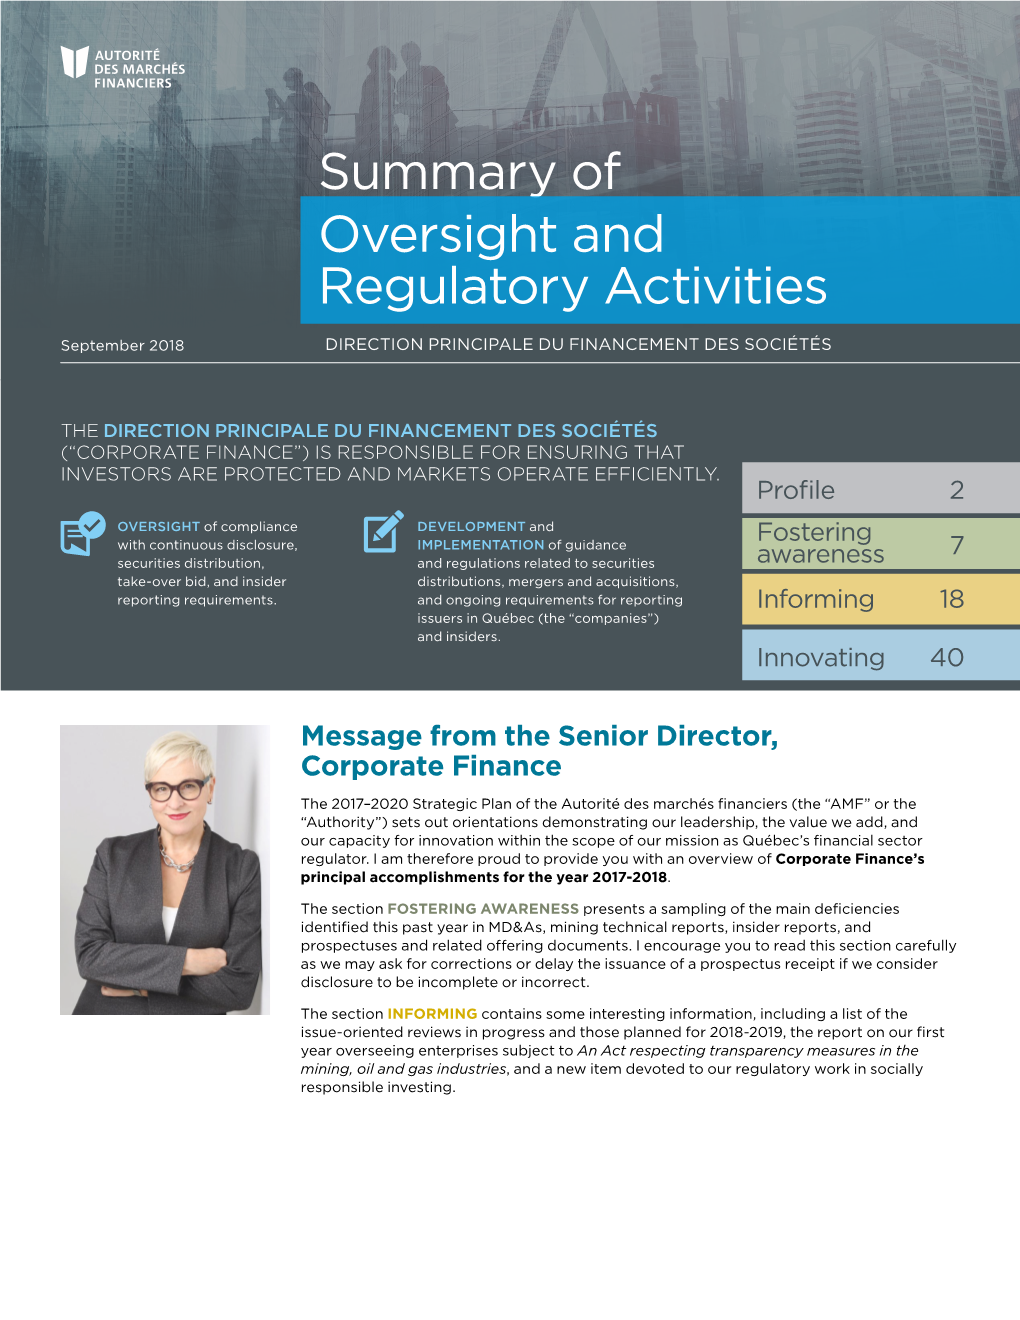 Summary of Oversight and Regulatory Activities